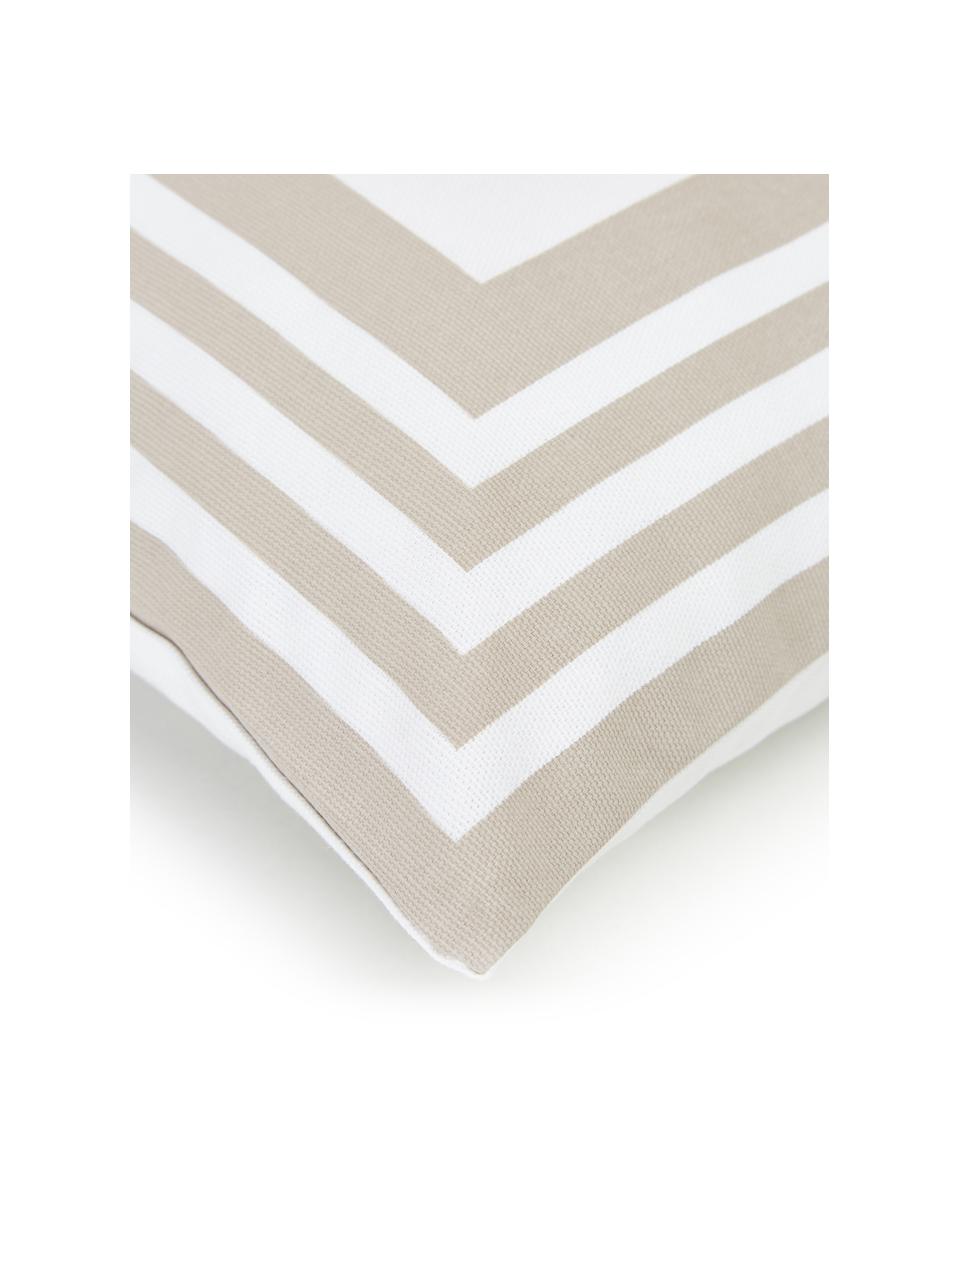 Kussenhoes Zahra in taupe/wit met grafisch patroon, 100% katoen, Wit, beige, B 45 x L 45 cm